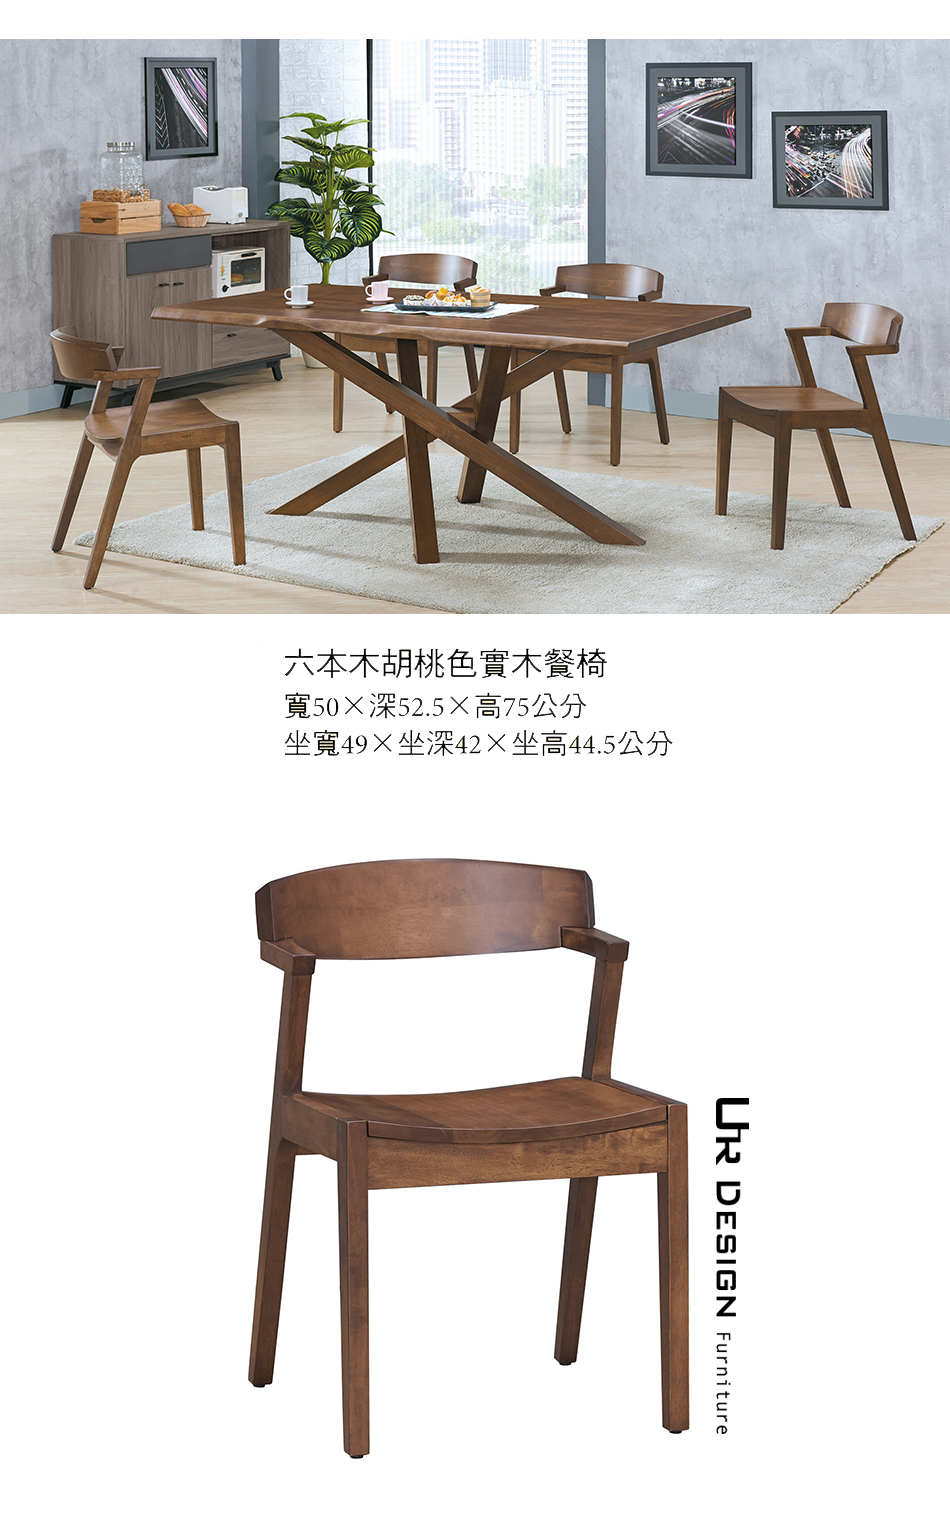 日式六本木胡桃色實木餐椅